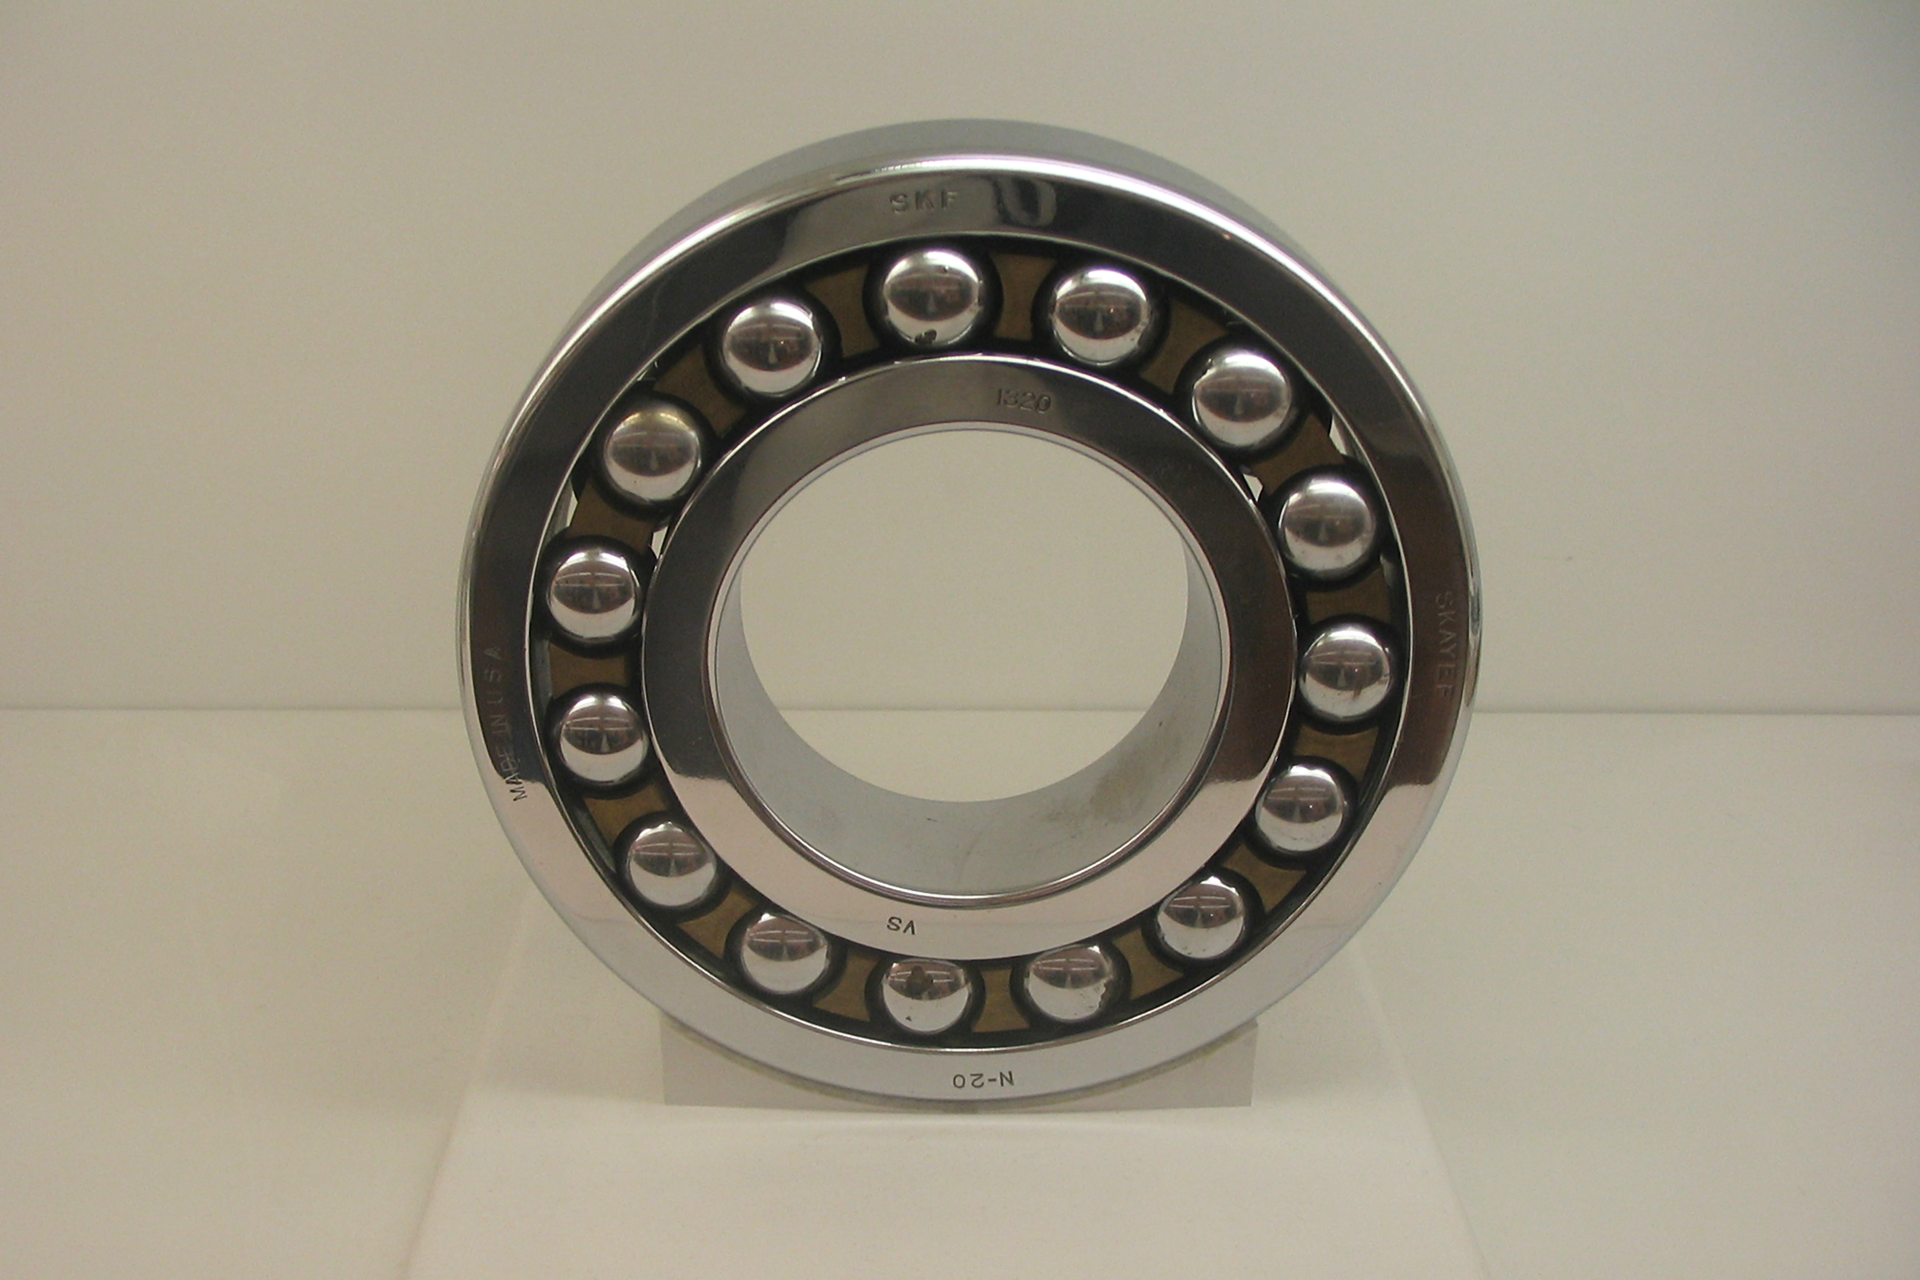 Zdjęcie przedstawia łożysko kulkowe. Składa się ono z zewnętrznego metalowego pierścienia i wewnętrznego mniejszego metalowego pierścienia. Pomiędzy te pierścienie włożonych jest kilkanaście metalowych kulek.